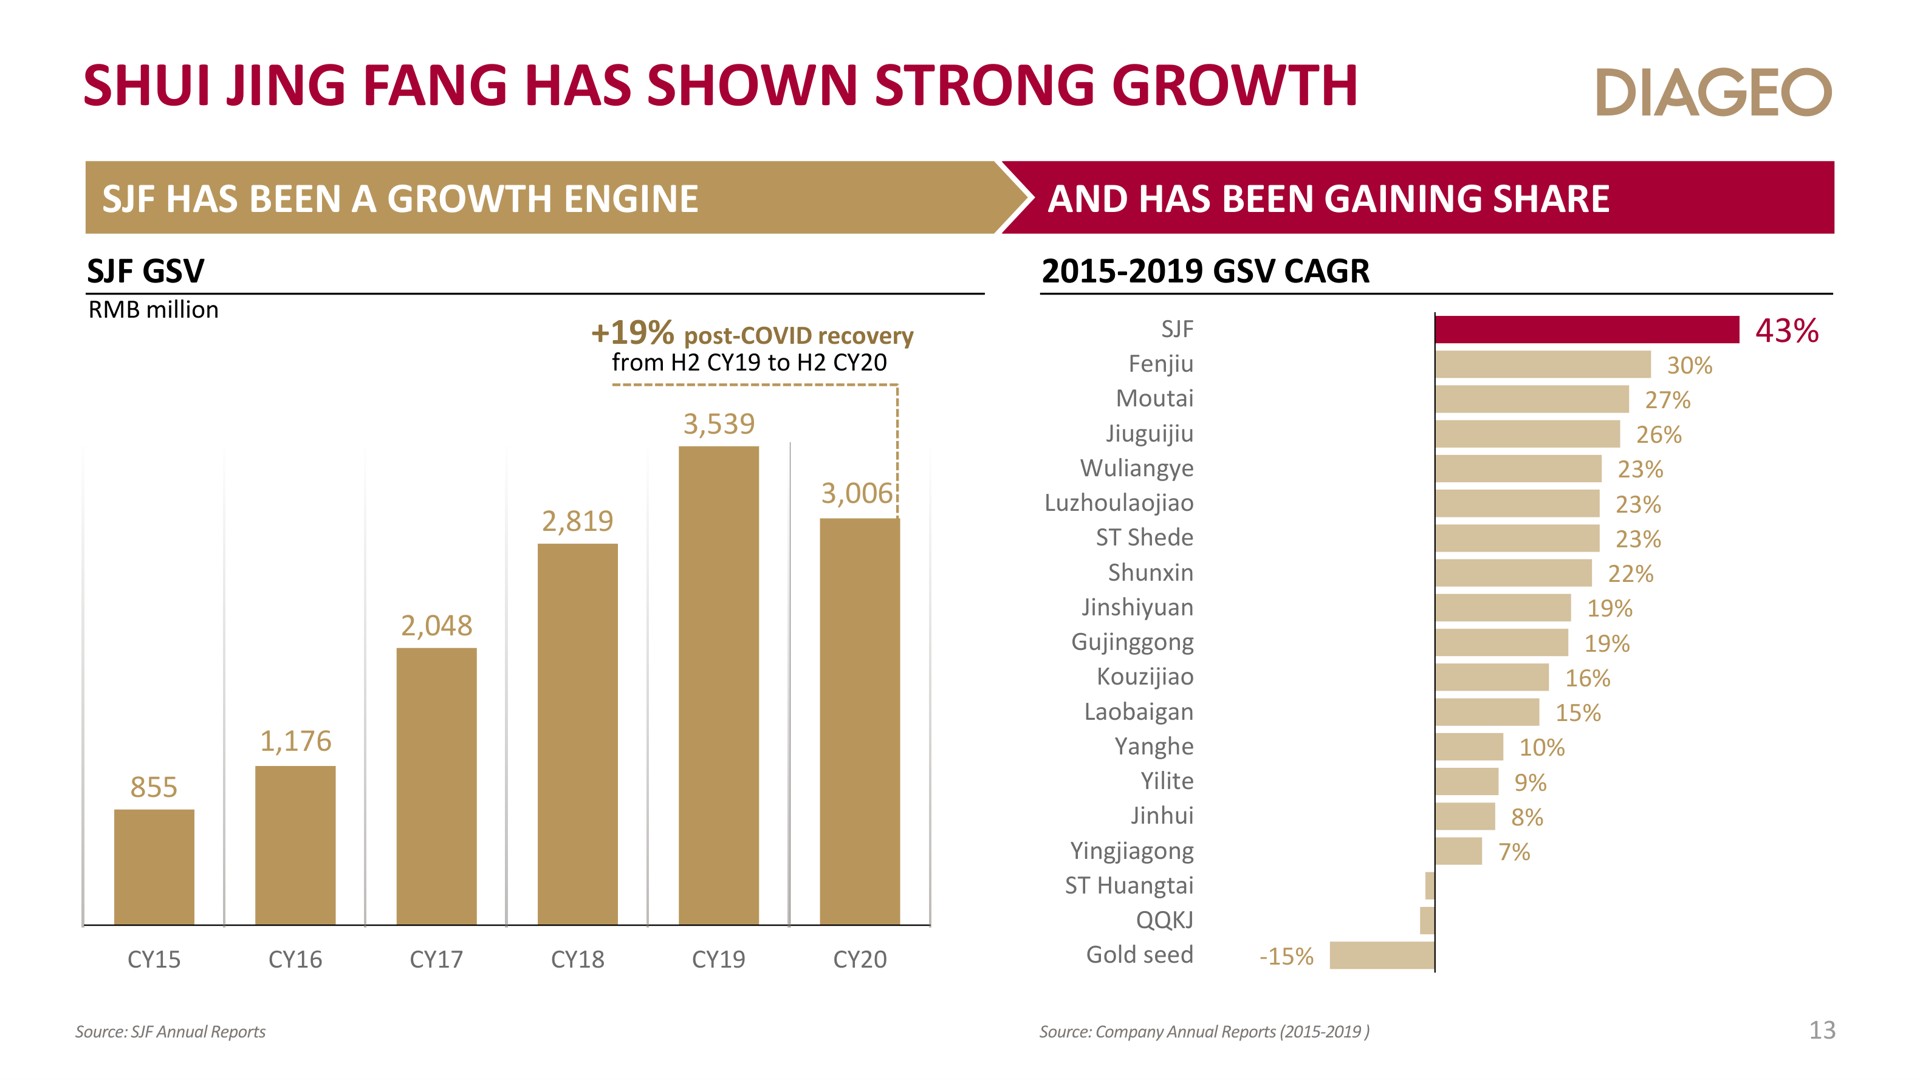 jing fang has shown strong growth | Diageo